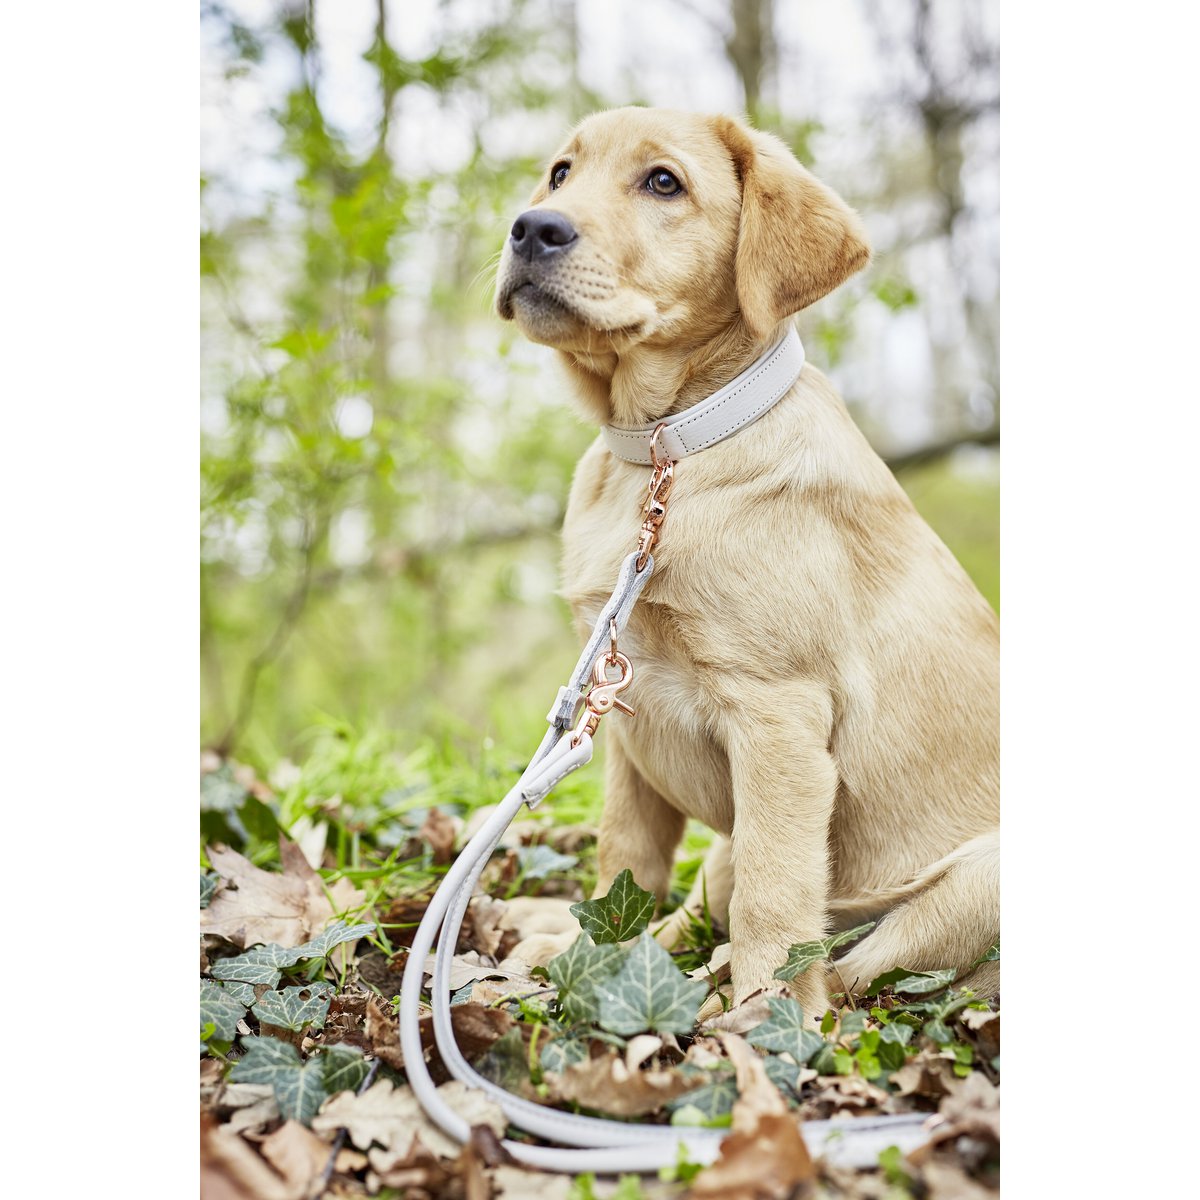 AMICI Hondenriem Lichtgrijs
De AMICI-collectie biedt een scala aan hondenriemen en halsbanden van hoogwaardig nappaleder, waardoor ze comfortabel en duurzaam zijn voor zowel mens als dier. MetLABONIwafwafAMICI Hondenriem Lichtgrijs